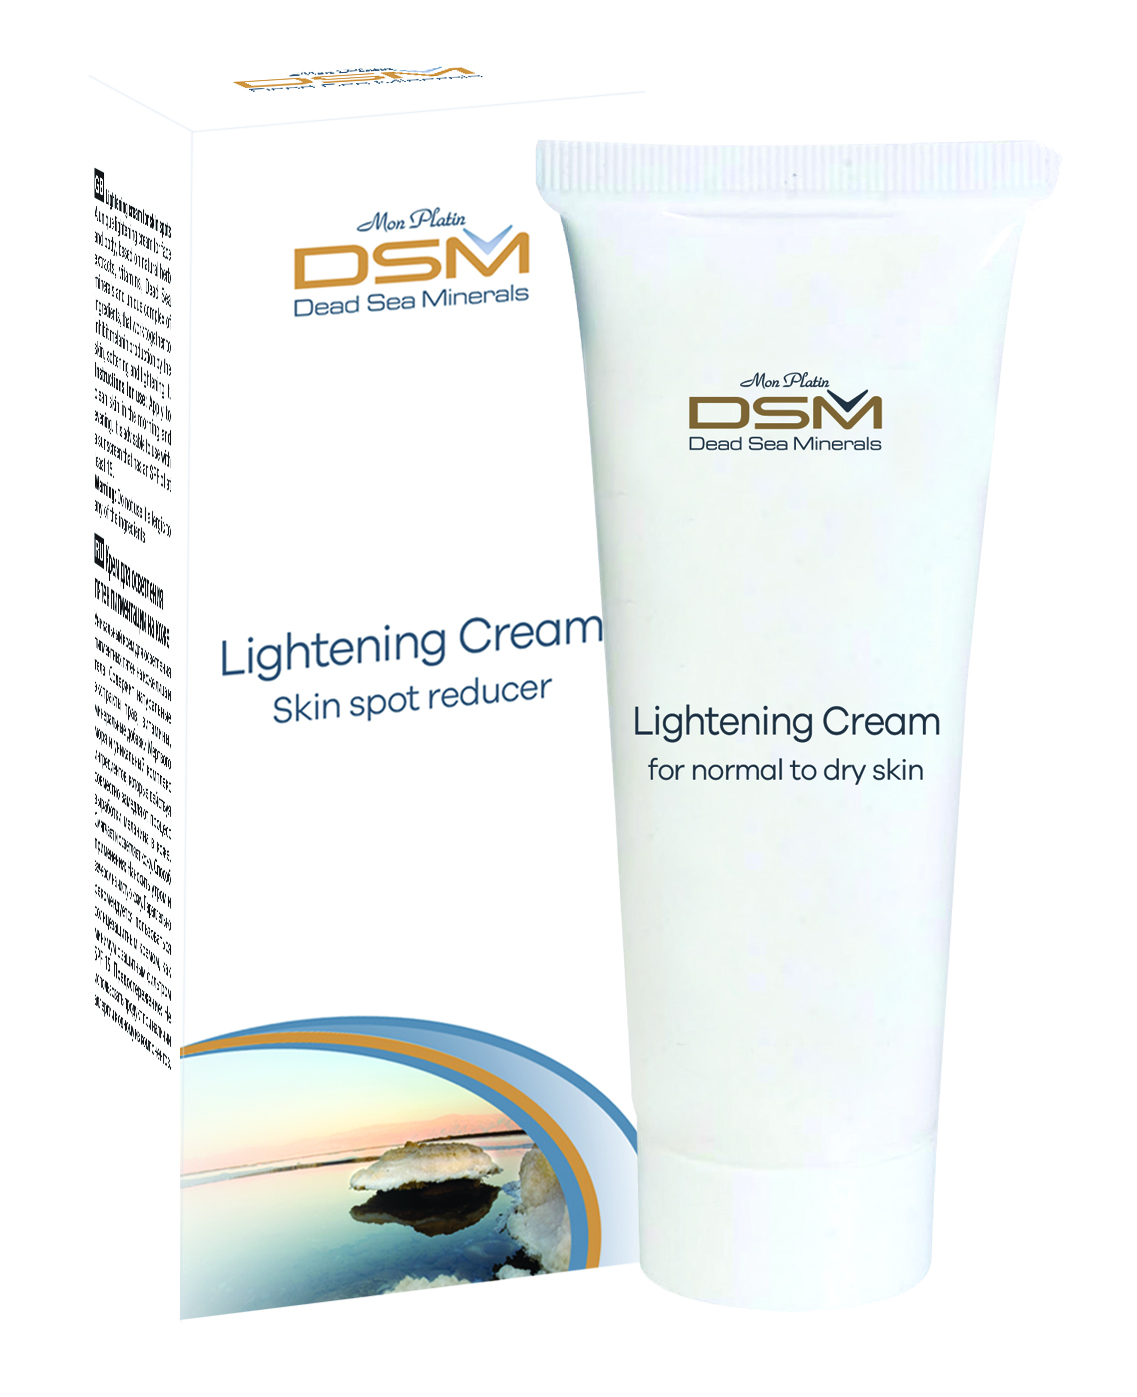 Lightening cream for skin spots